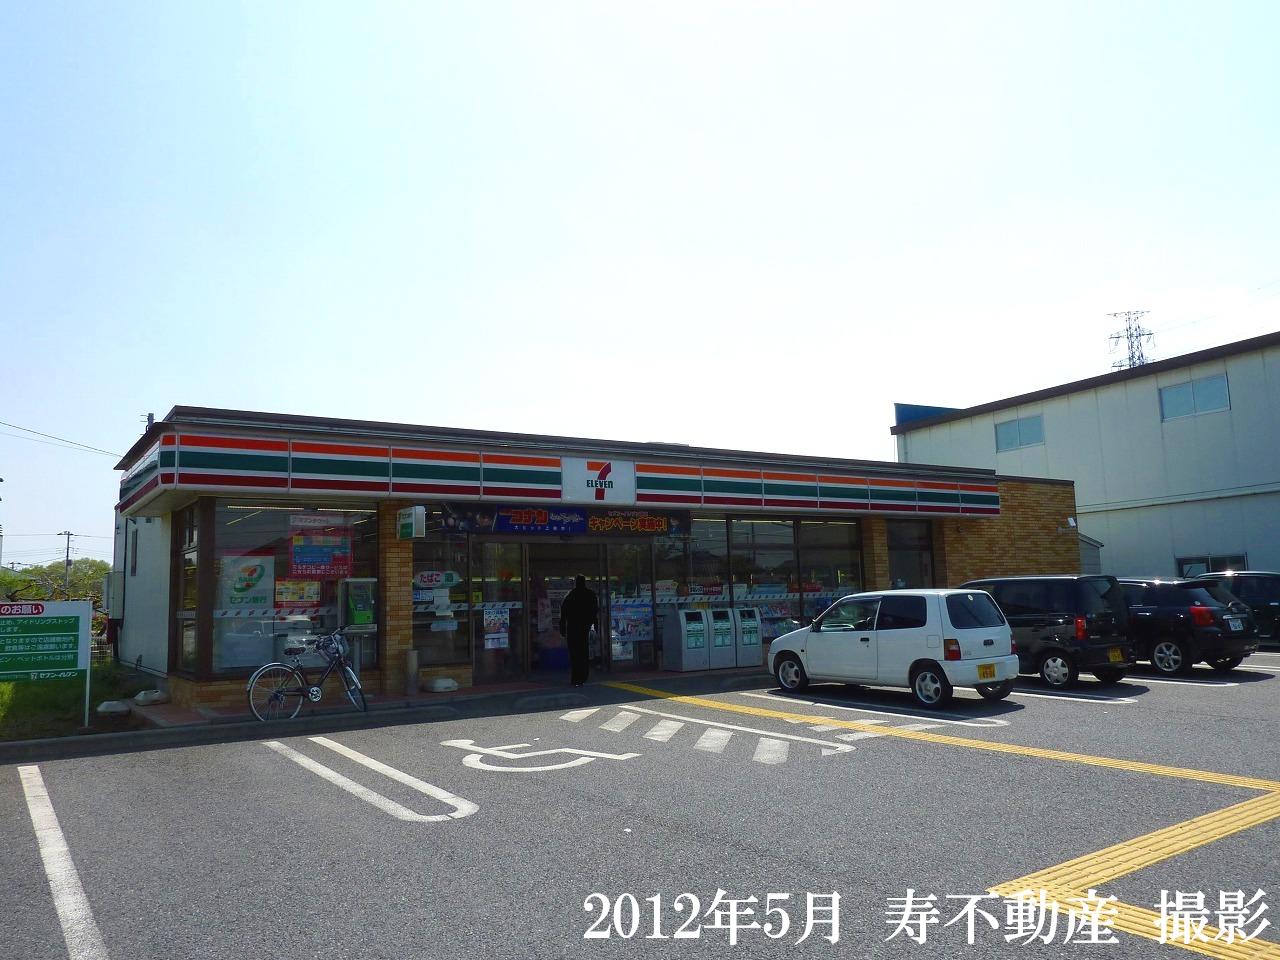 Convenience store. Seven-Eleven Okegawa Tonoyama store up (convenience store) 585m